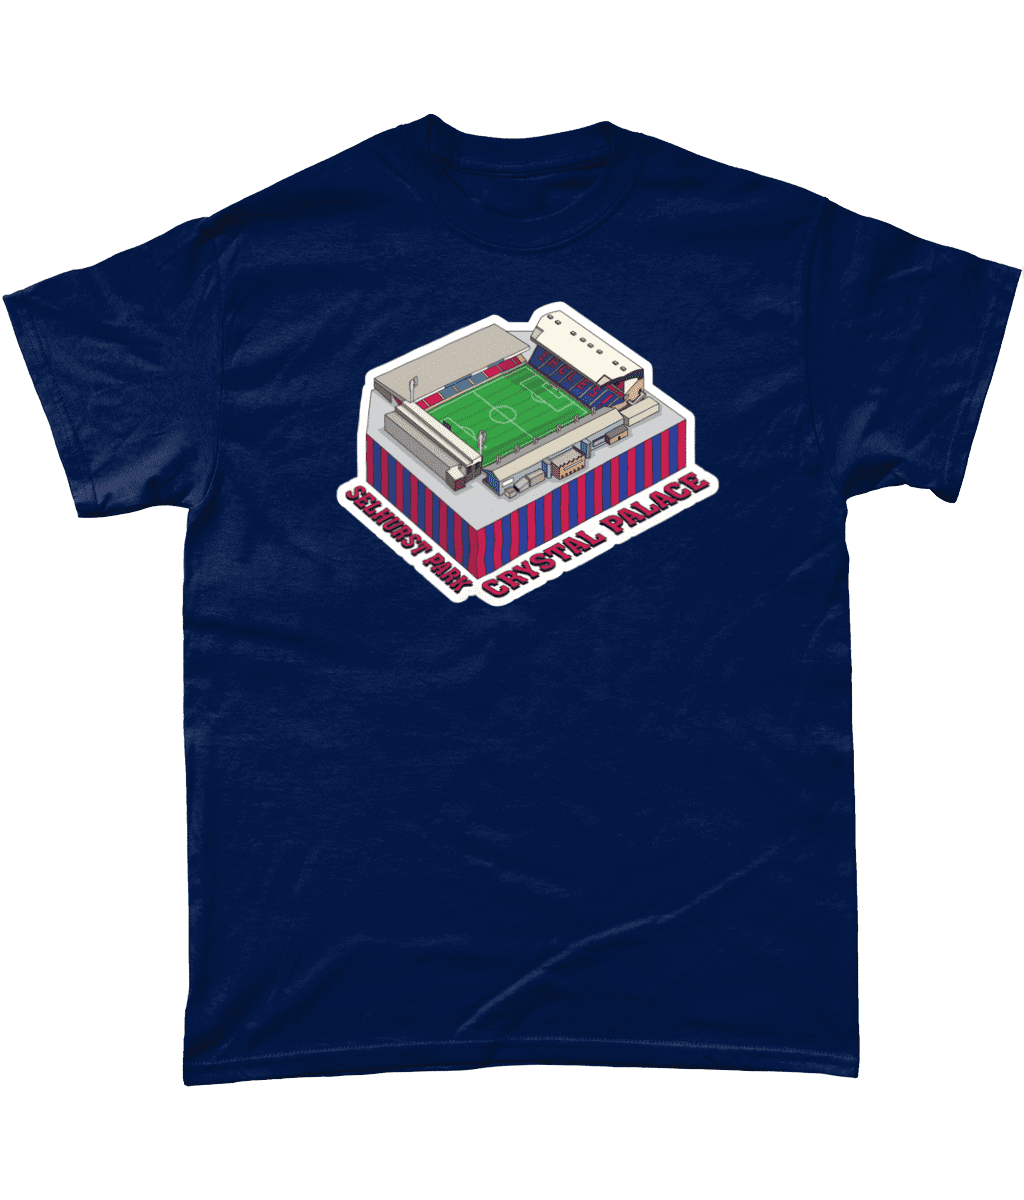 Crystal Palace Selhurst Park Football Stadium Illustration T Shirt Navy